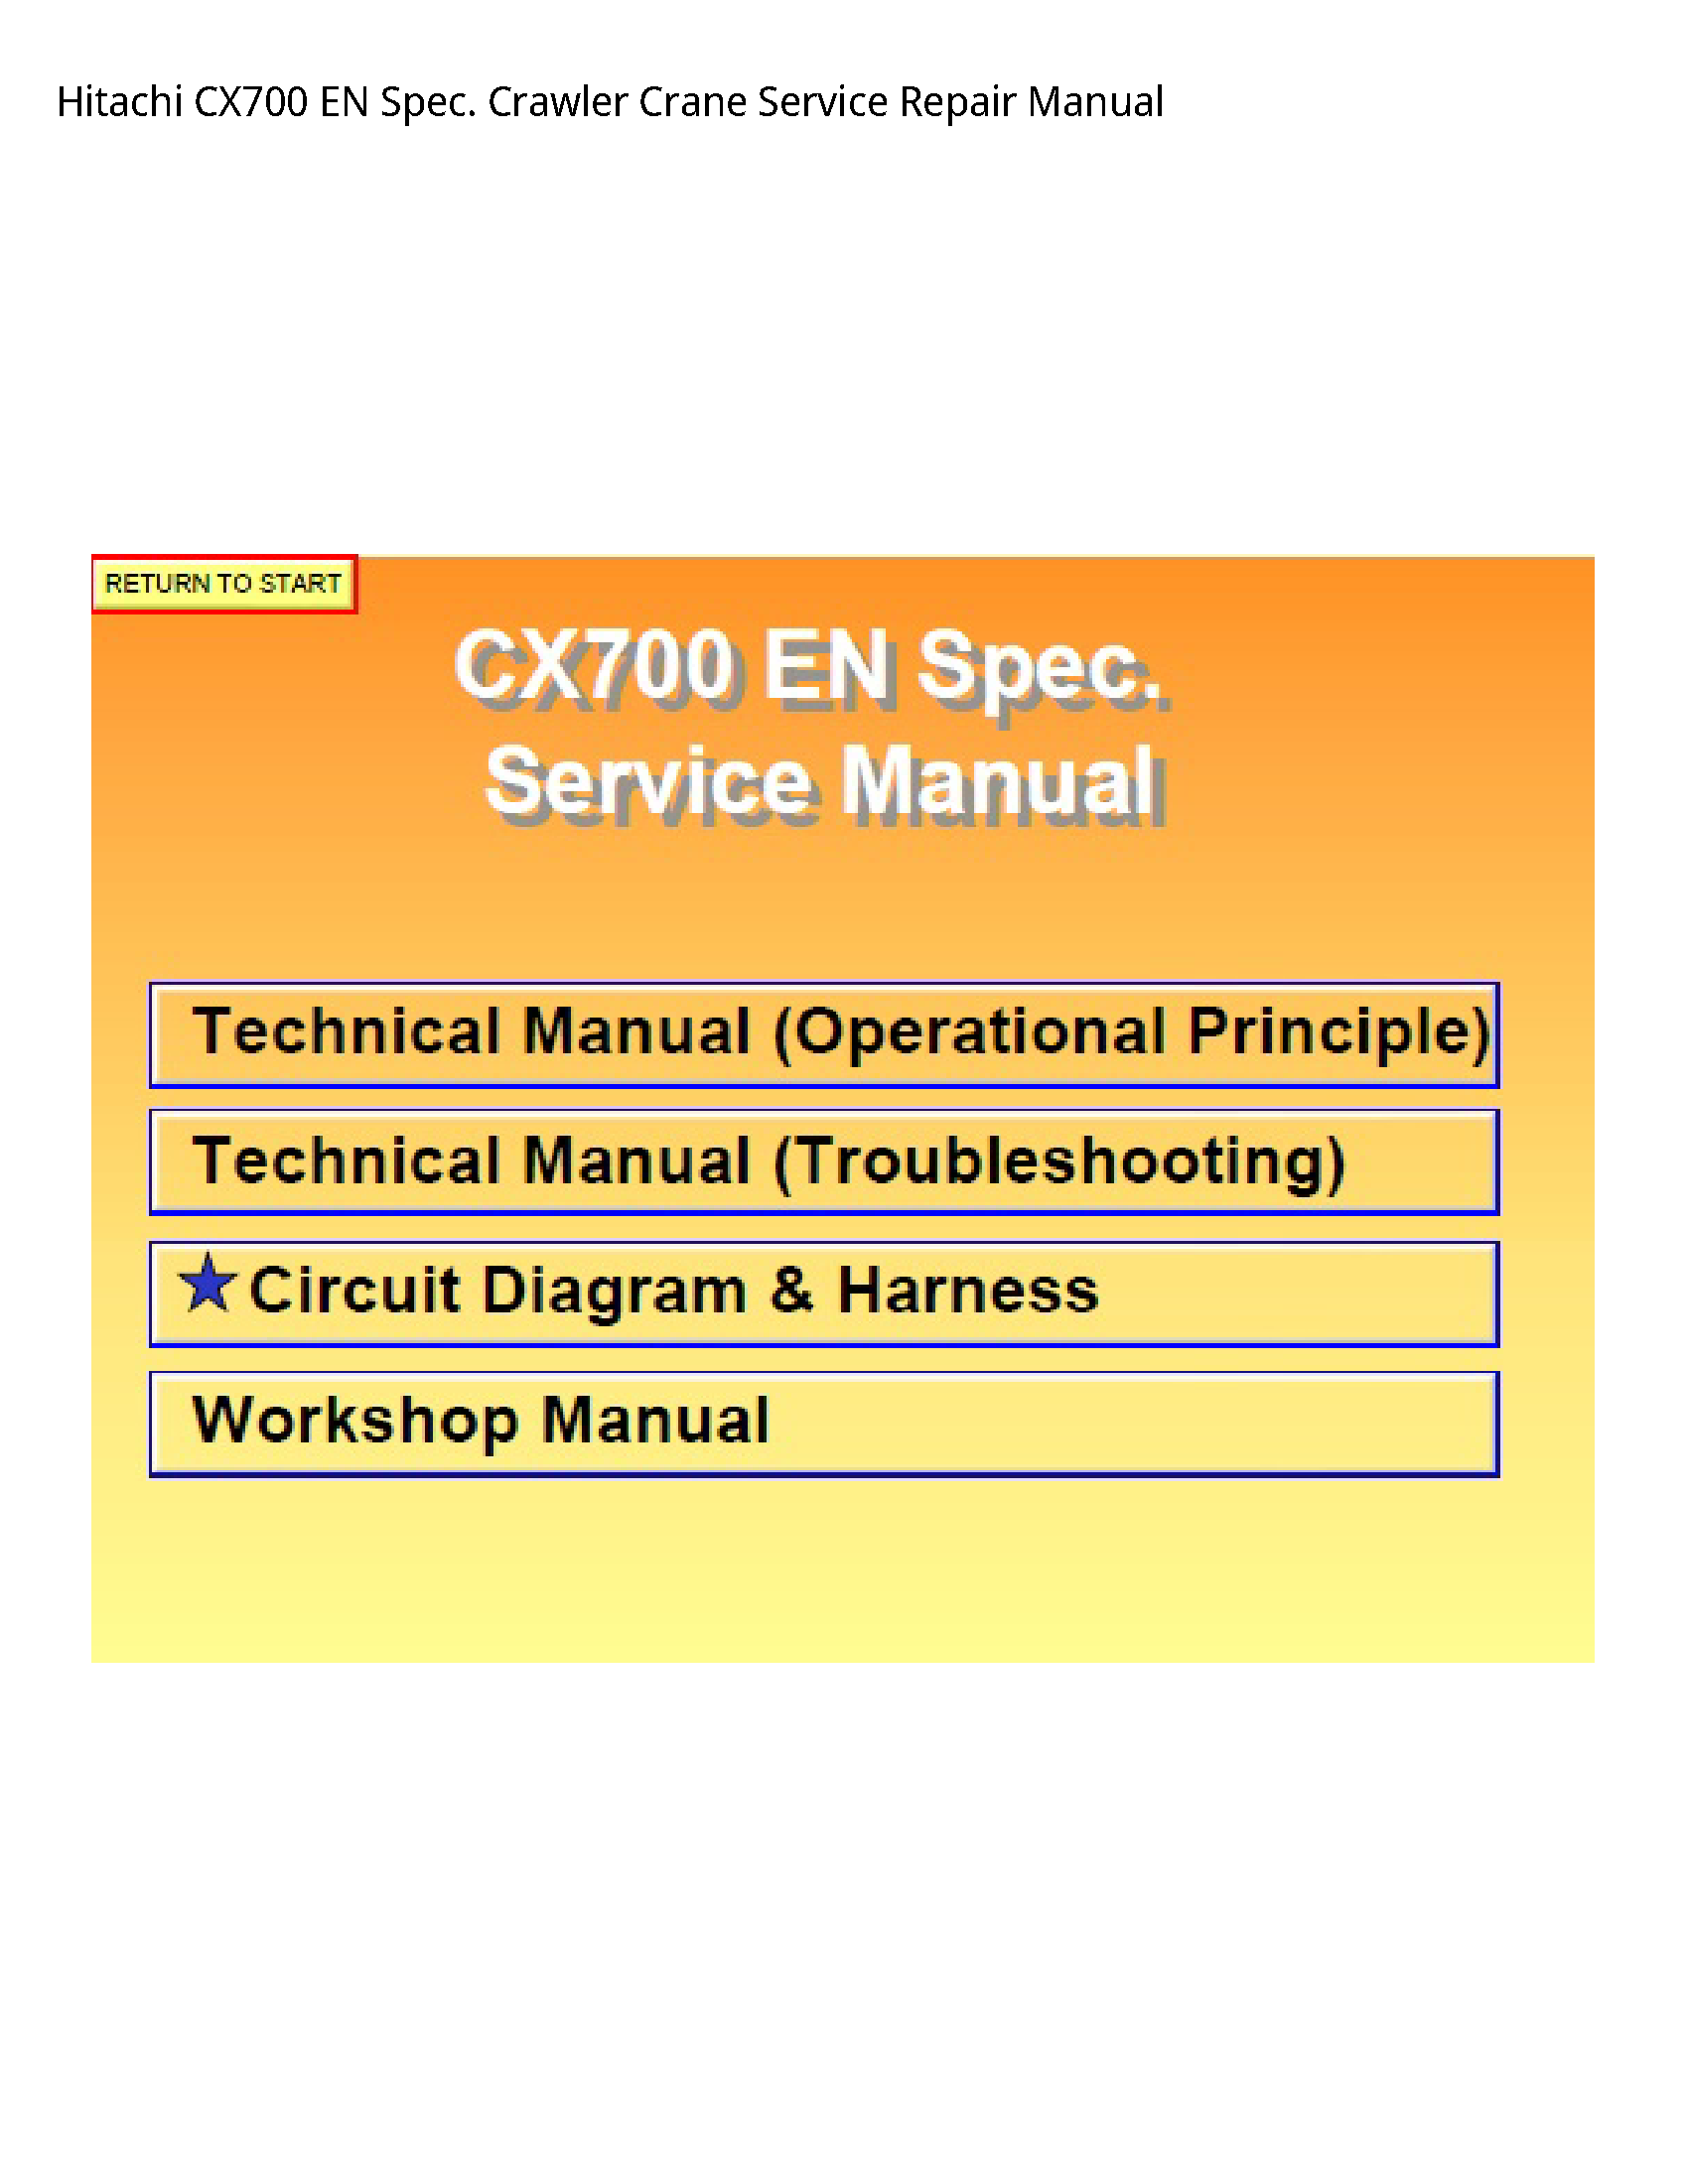 Hitachi CX700 EN Spec. Crawler Crane manual